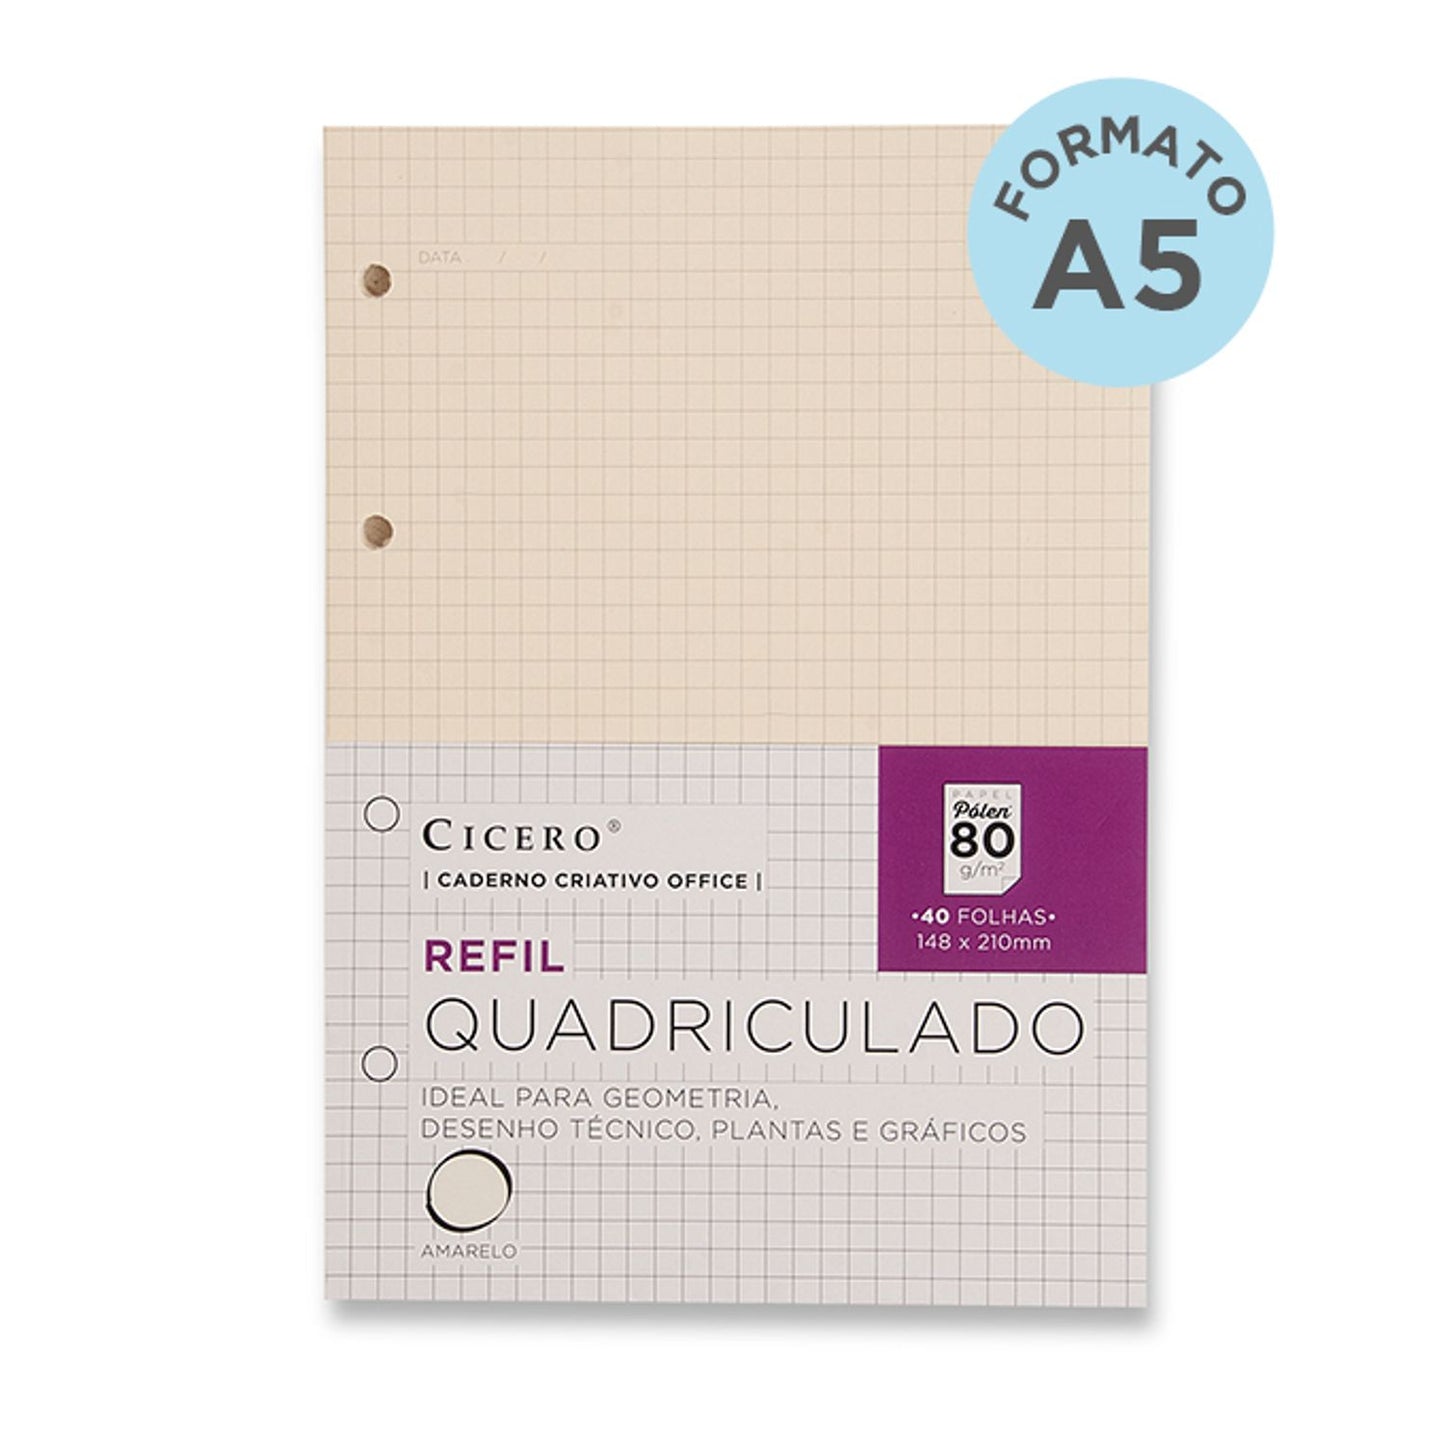 Kit Refil Caderno Criativo A5 Cícero - Pautado, Pontado, Quadriculado e Sem Pauta